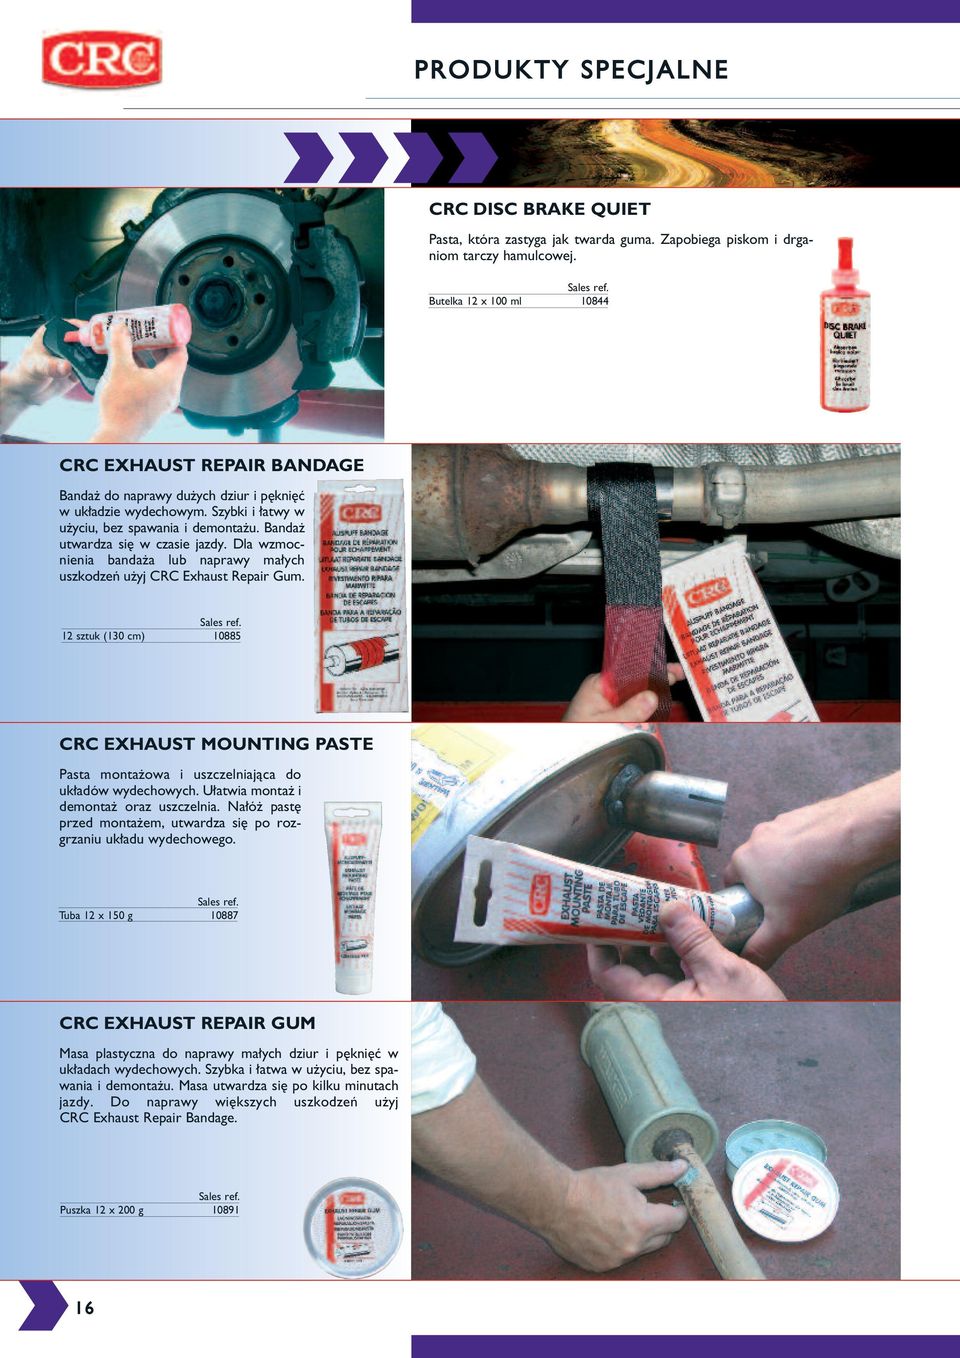 Bandaż utwardza si w czasie jazdy. Dla wzmocnienia bandaża lub naprawy małych uszkodzeń użyj CRC Exhaust Repair Gum.